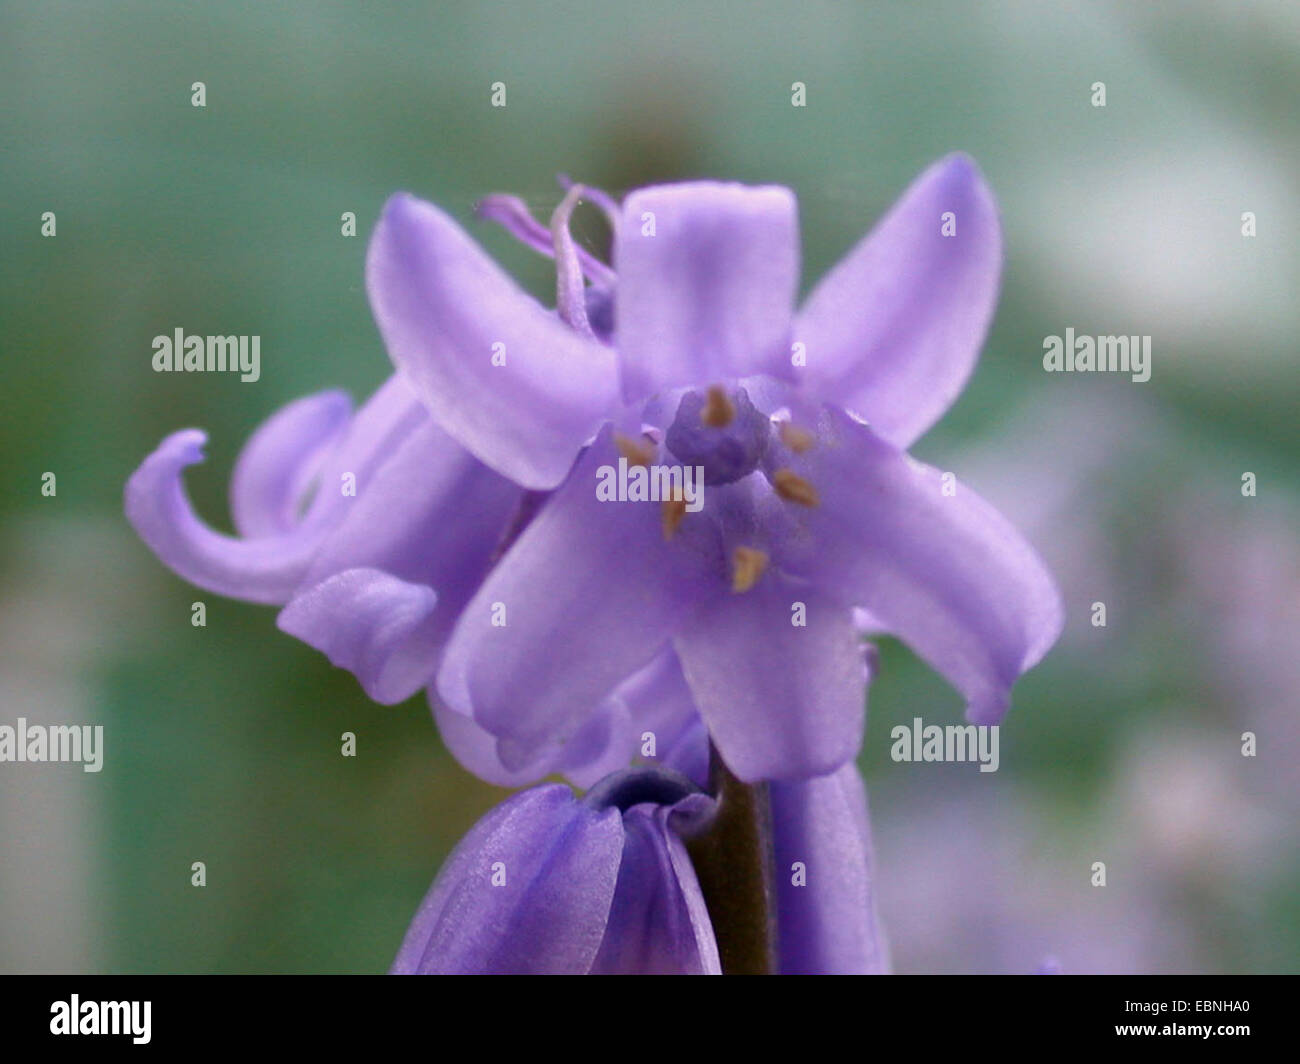 Spanish Bluebell (Hyacinthoides hispanica), flower Stock Photo